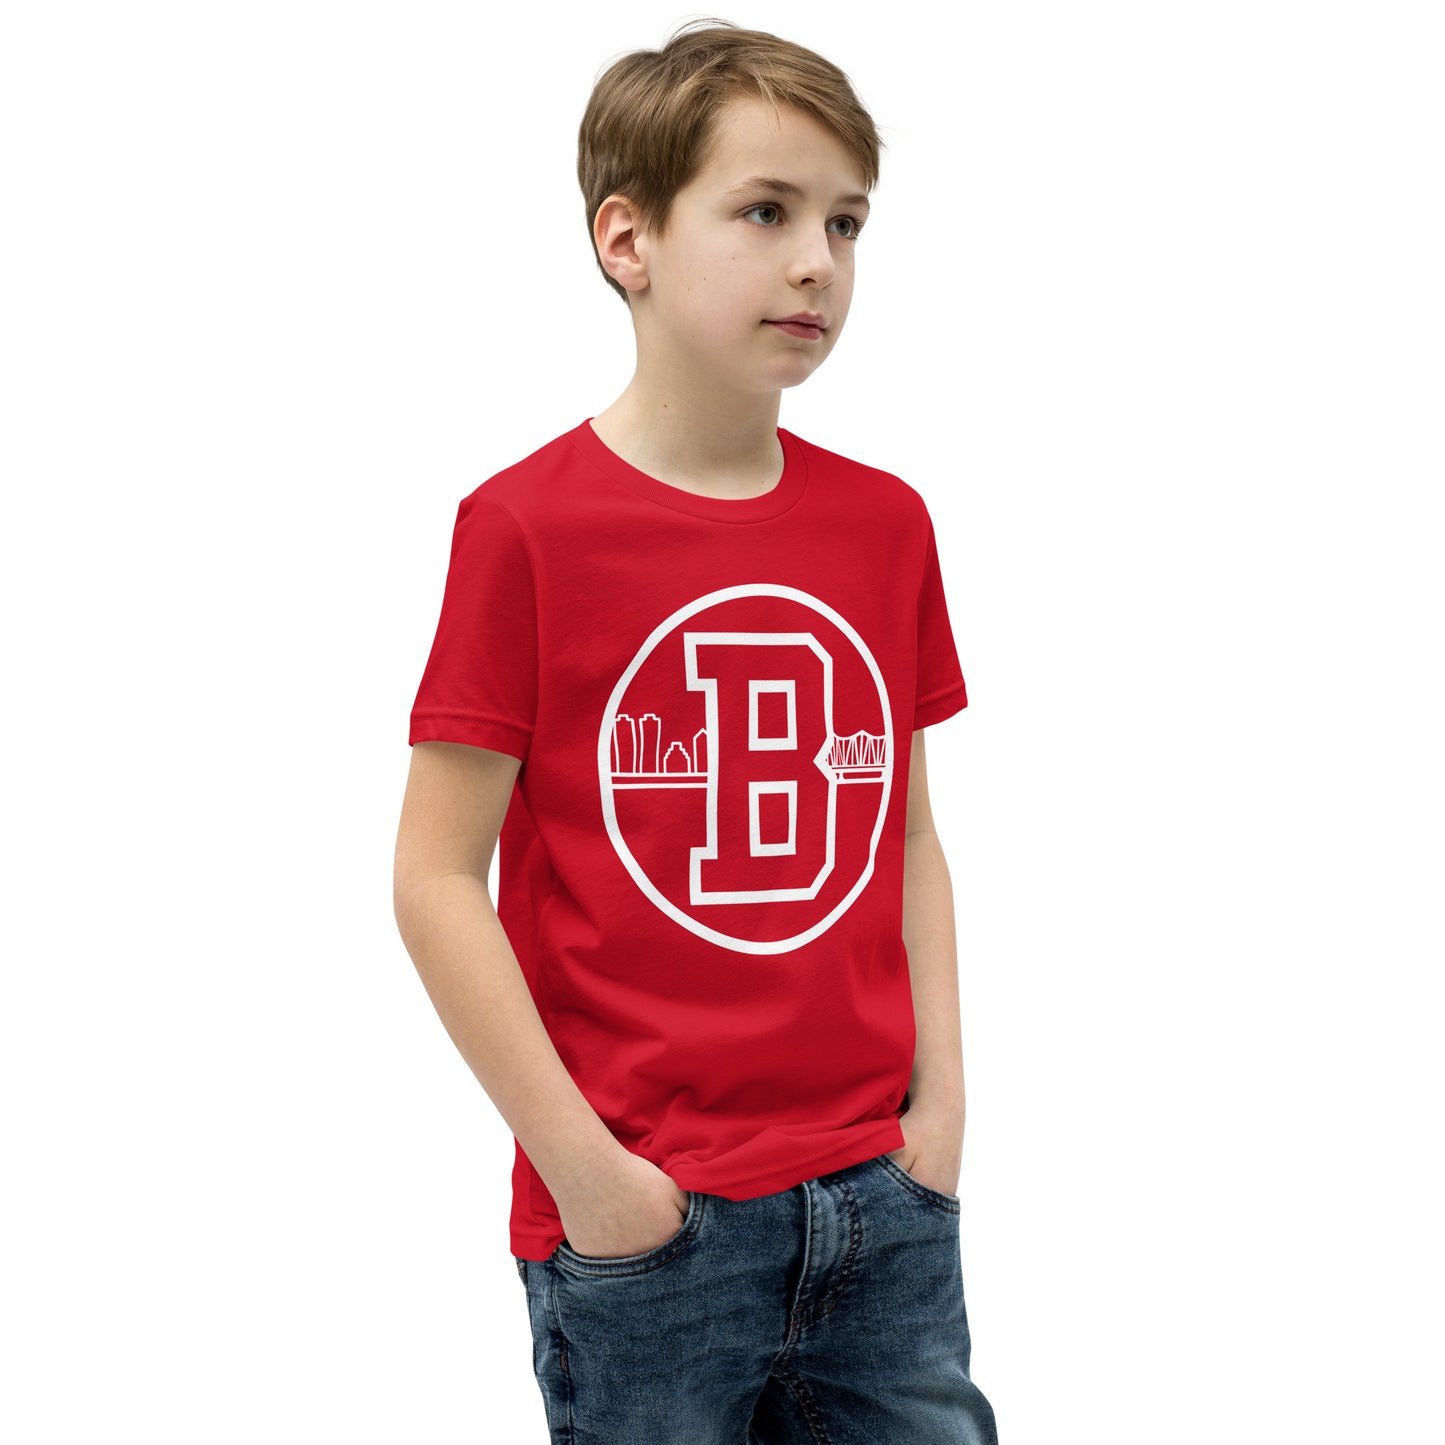 HOTB Kids T-Shirt Red